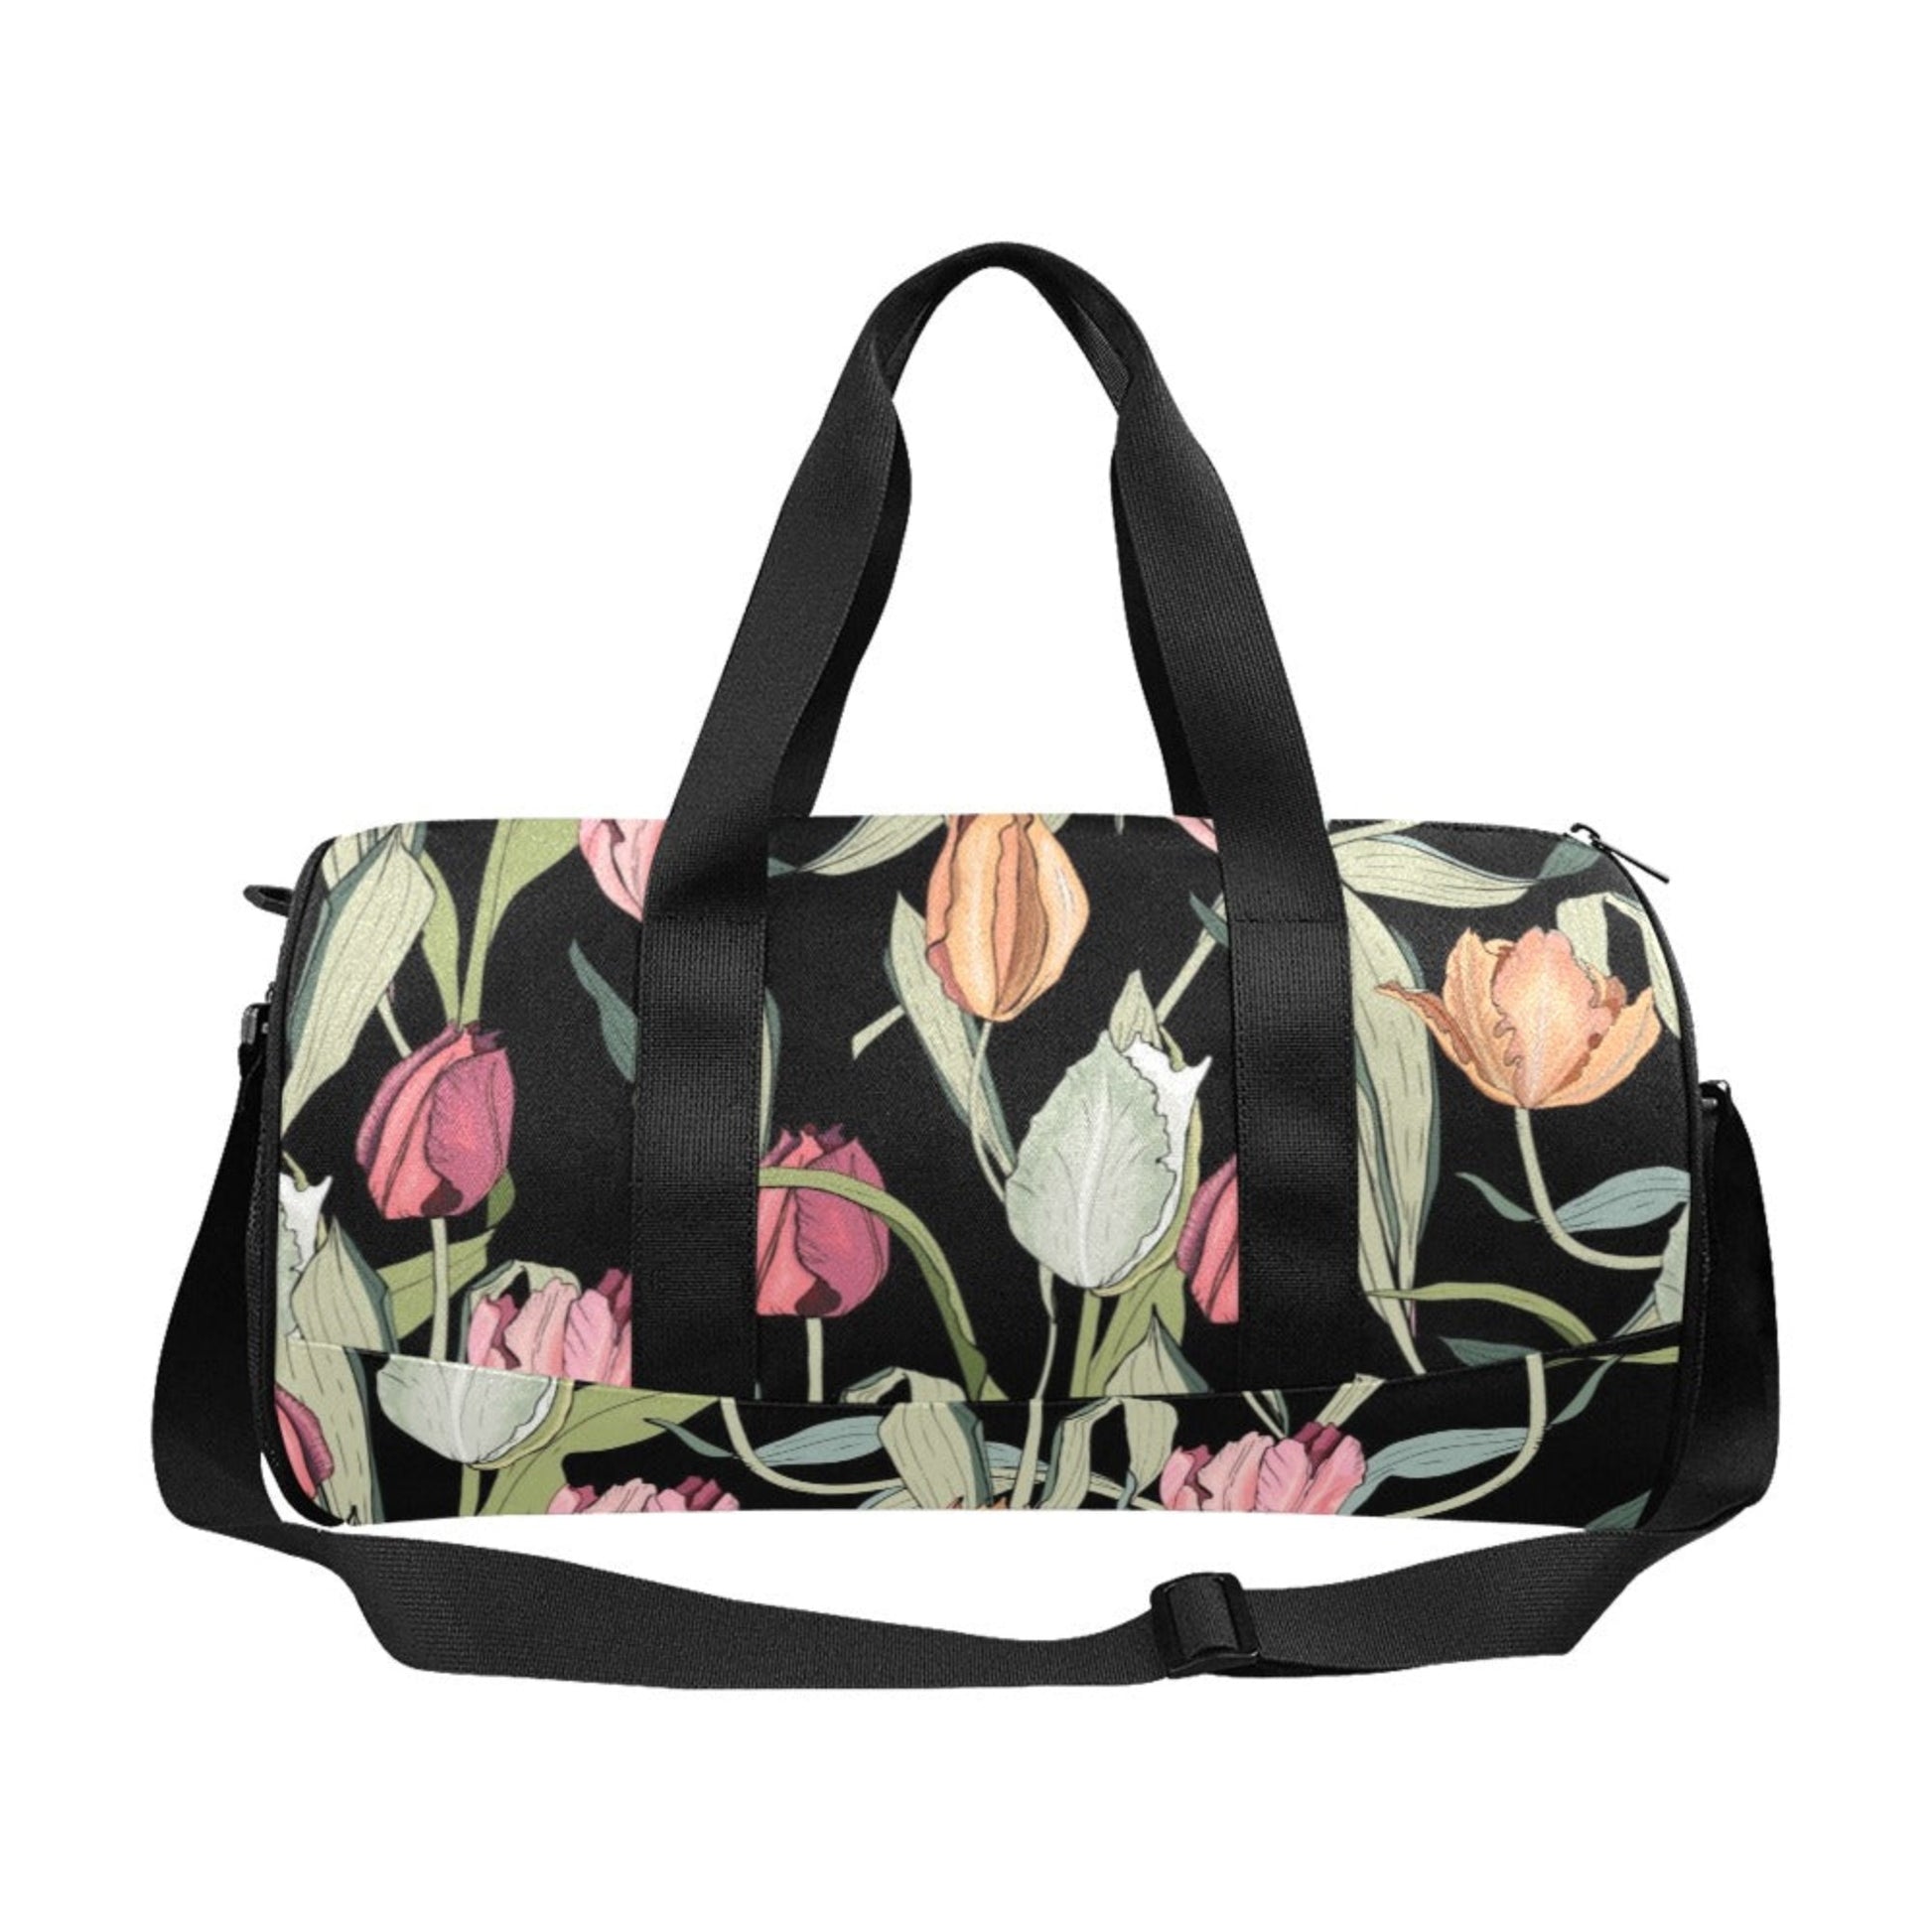 Tulips - Round Duffle Bag Round Duffle Bag